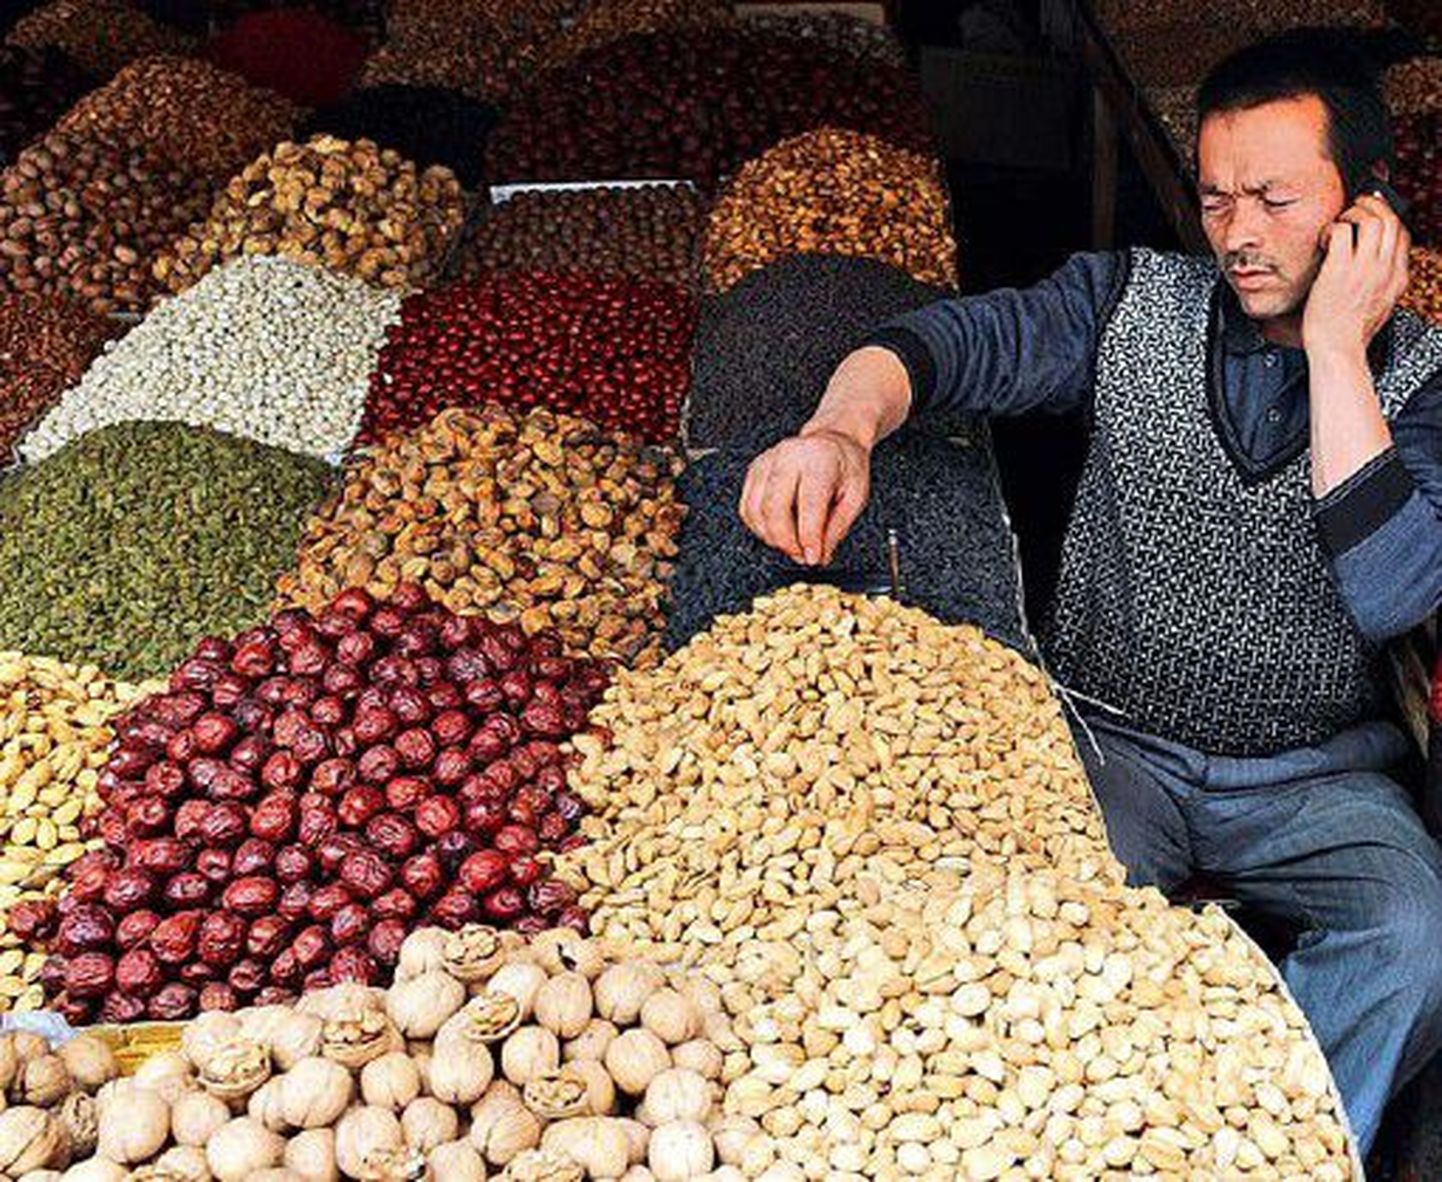 Kuivatatud puuviljade ja pähklite müüja ootab ostjaid, toiduainete hinnad on viimasel Hiinas kiiresti tõusnud.